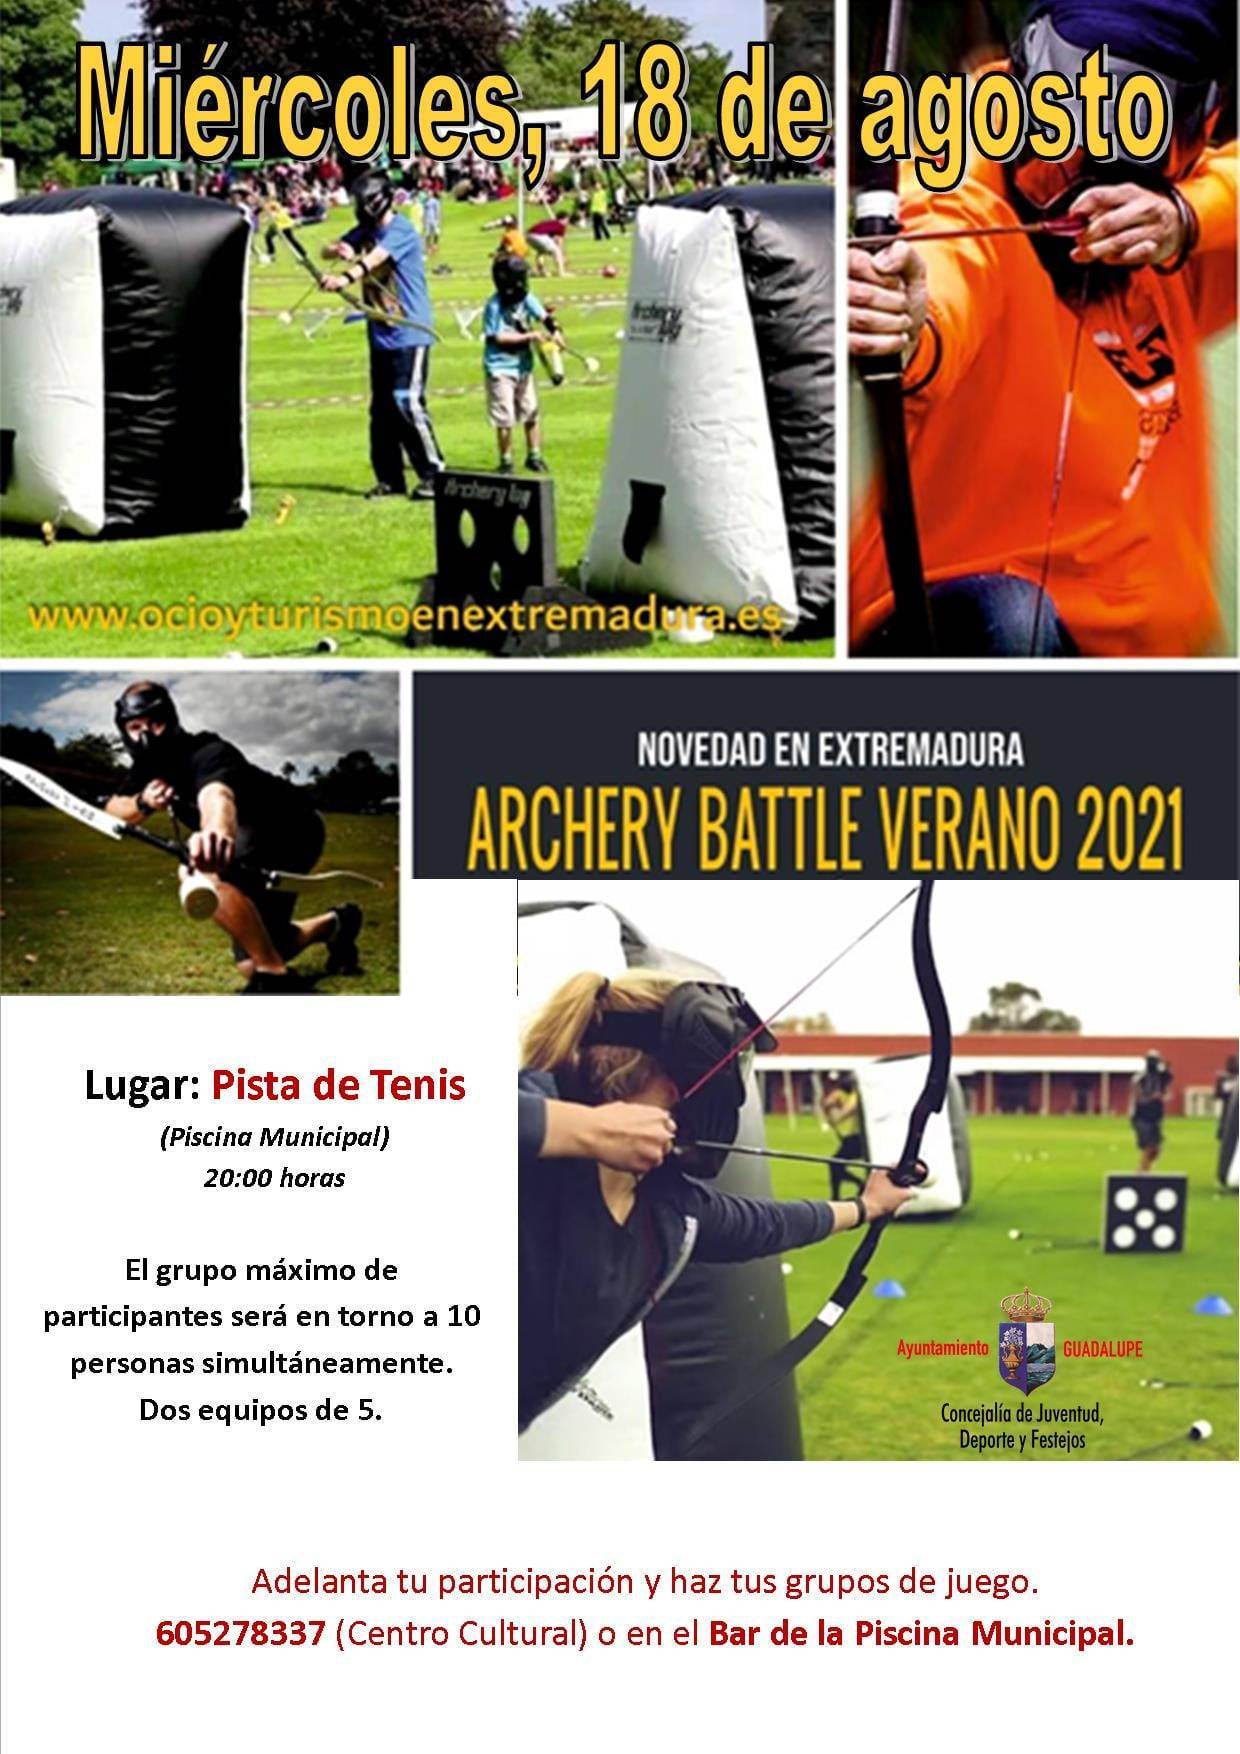 Archery battle (2021) - Guadalupe (Cáceres)